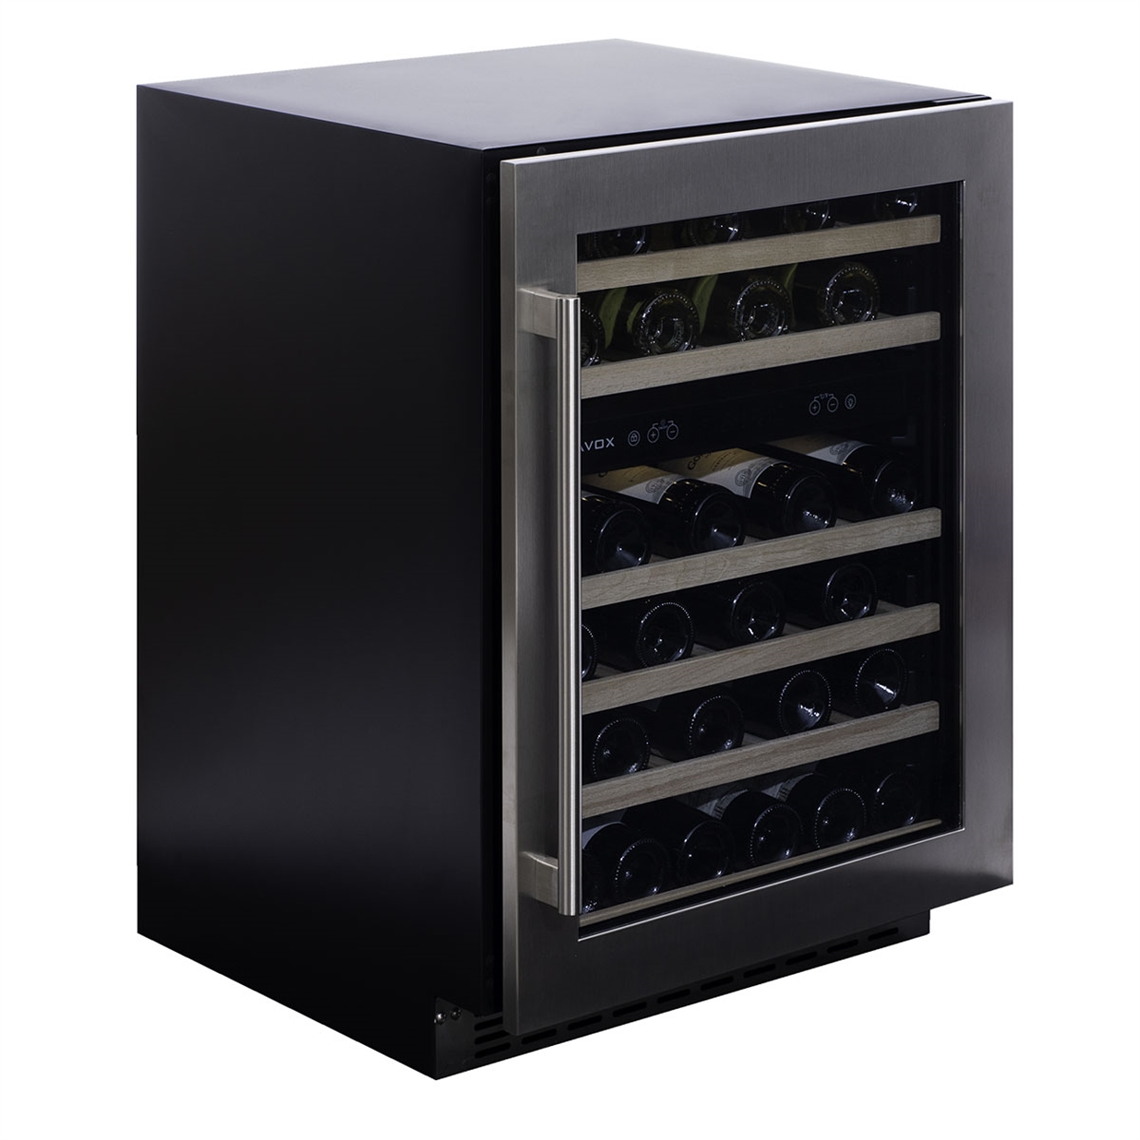 Dunavox Wine Cabinet Flow - 2-Temperature Built-In Under Counter - Stainless Steel DAUF-46.145DSS